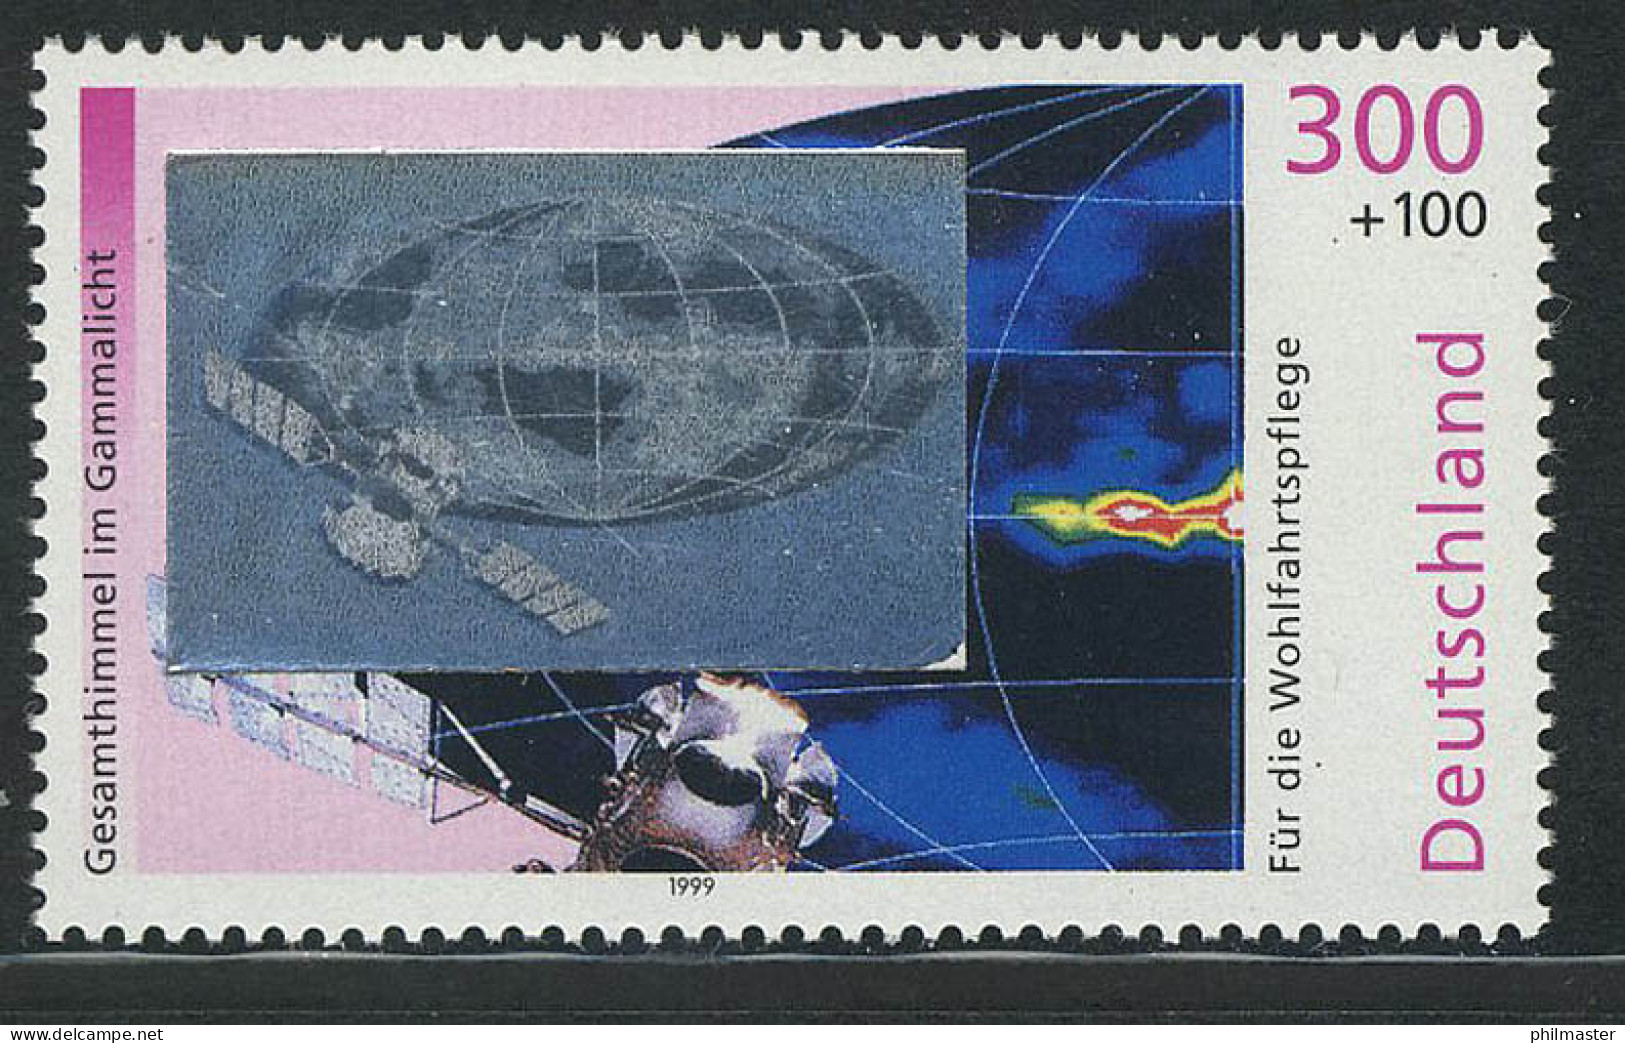 2081 Kosmos Gammastrahlung, Mit Hologramm Auf Der Marke, Postfrisch ** - Ologrammi